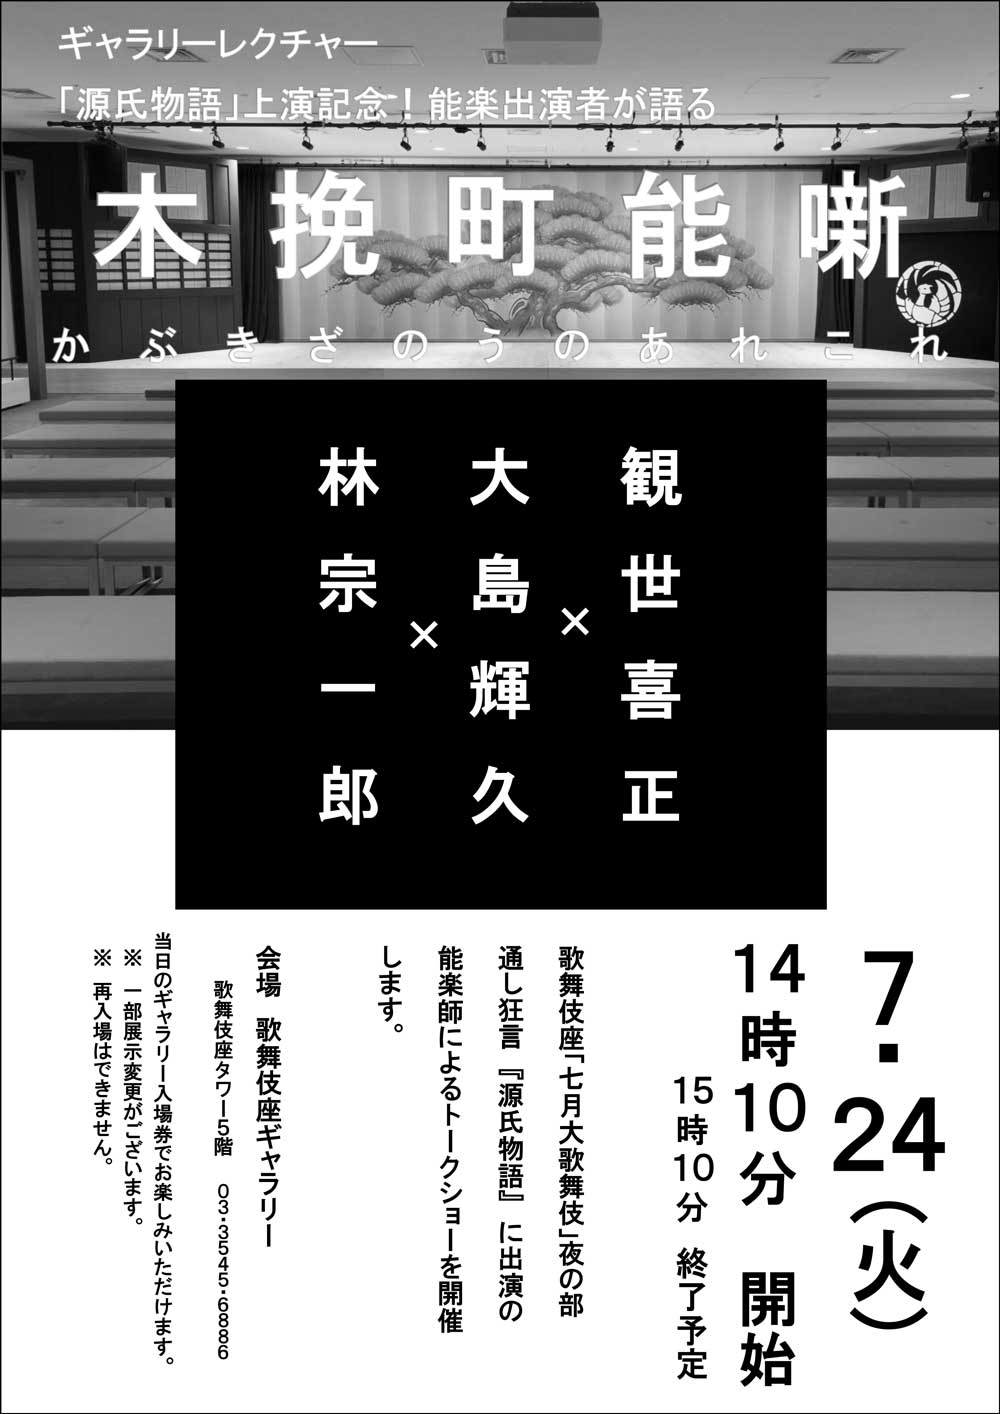 歌舞伎座ギャラリー「木挽町能噺」第二弾のお知らせ